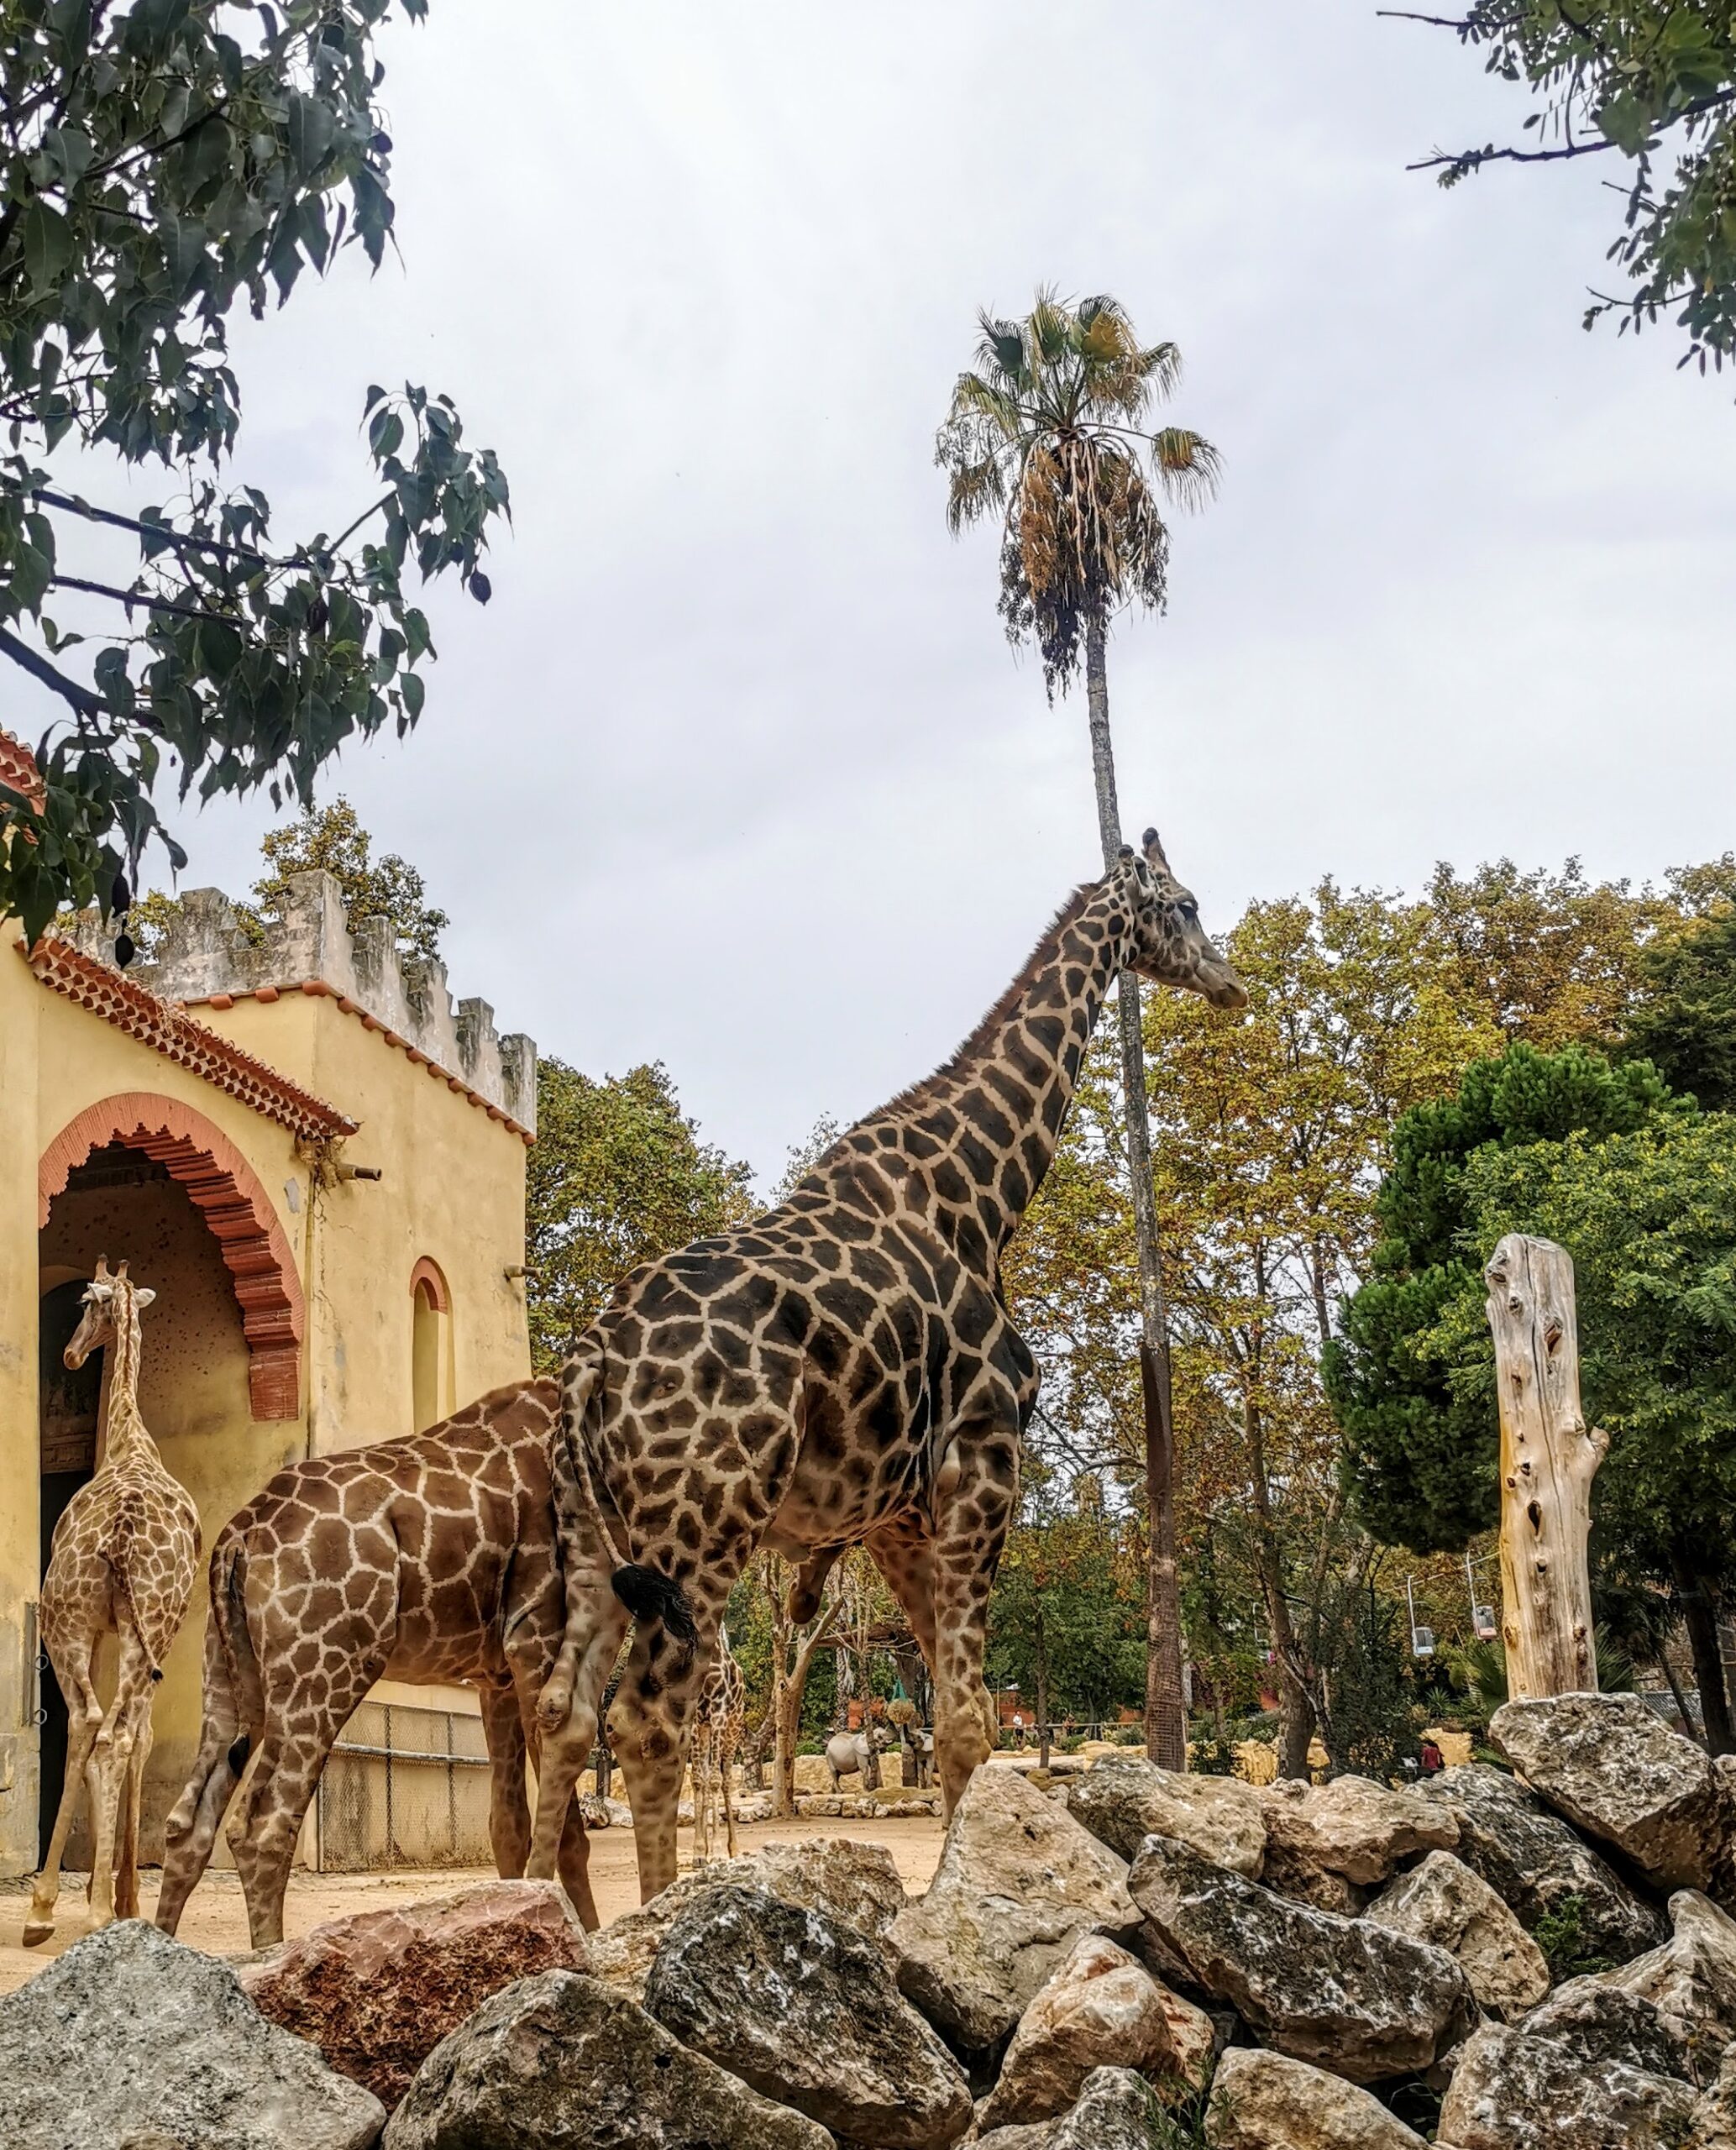 Giraffen im Zoo Lissabon